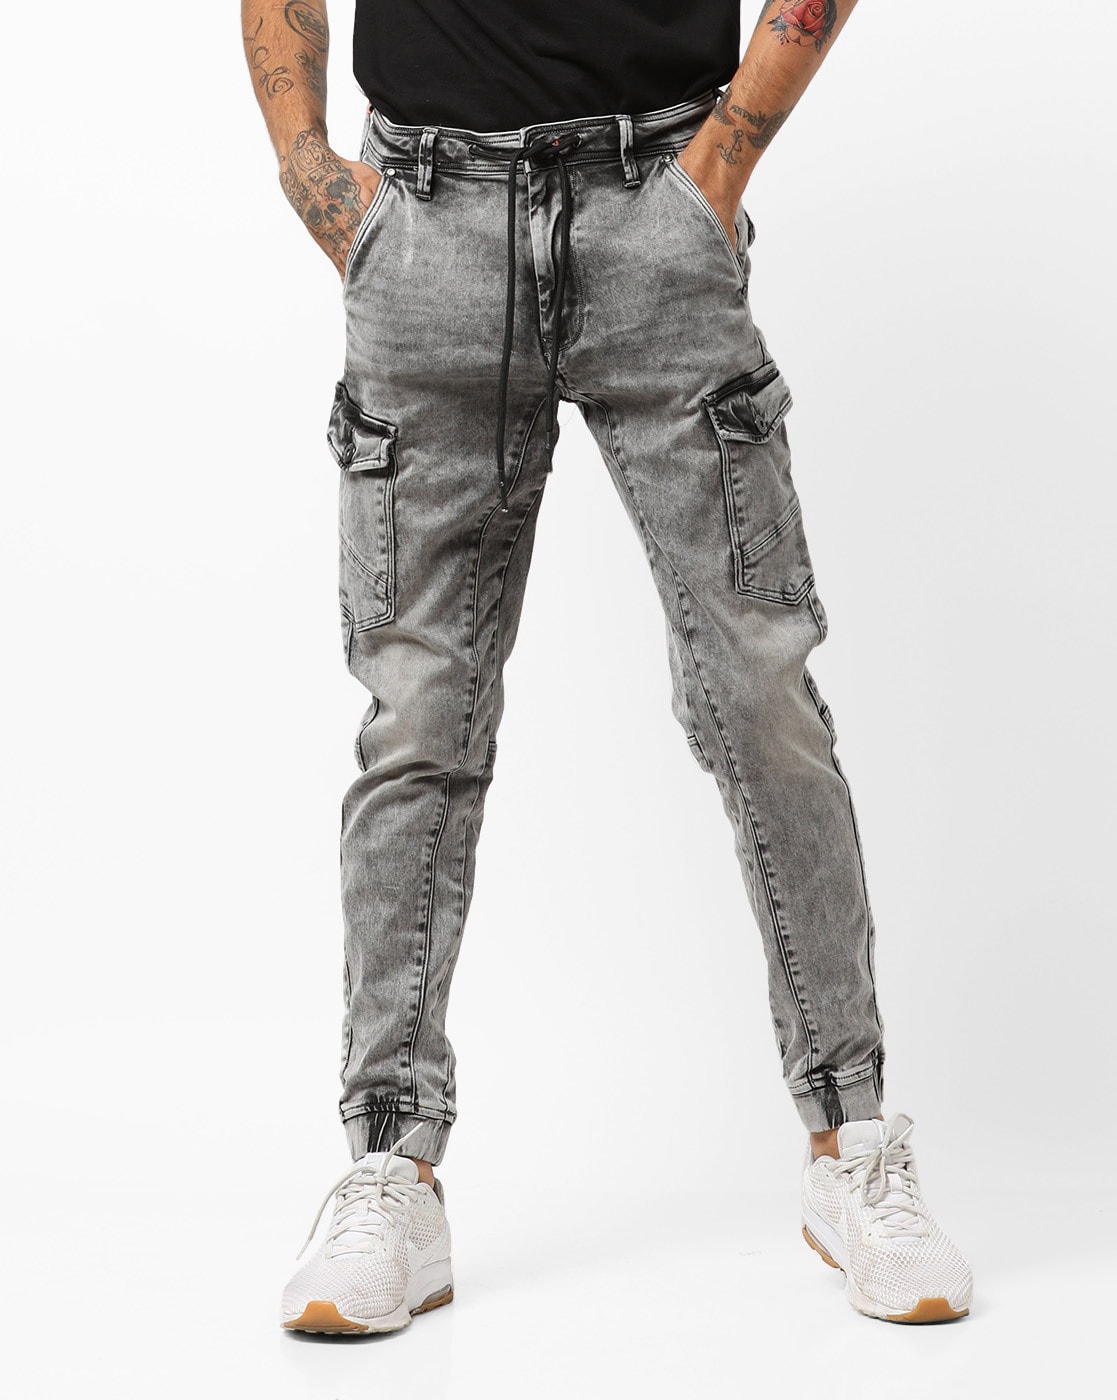 Buy Black Solid Joggers Fit Jeans for Men Online at Killer Jeans | 497187